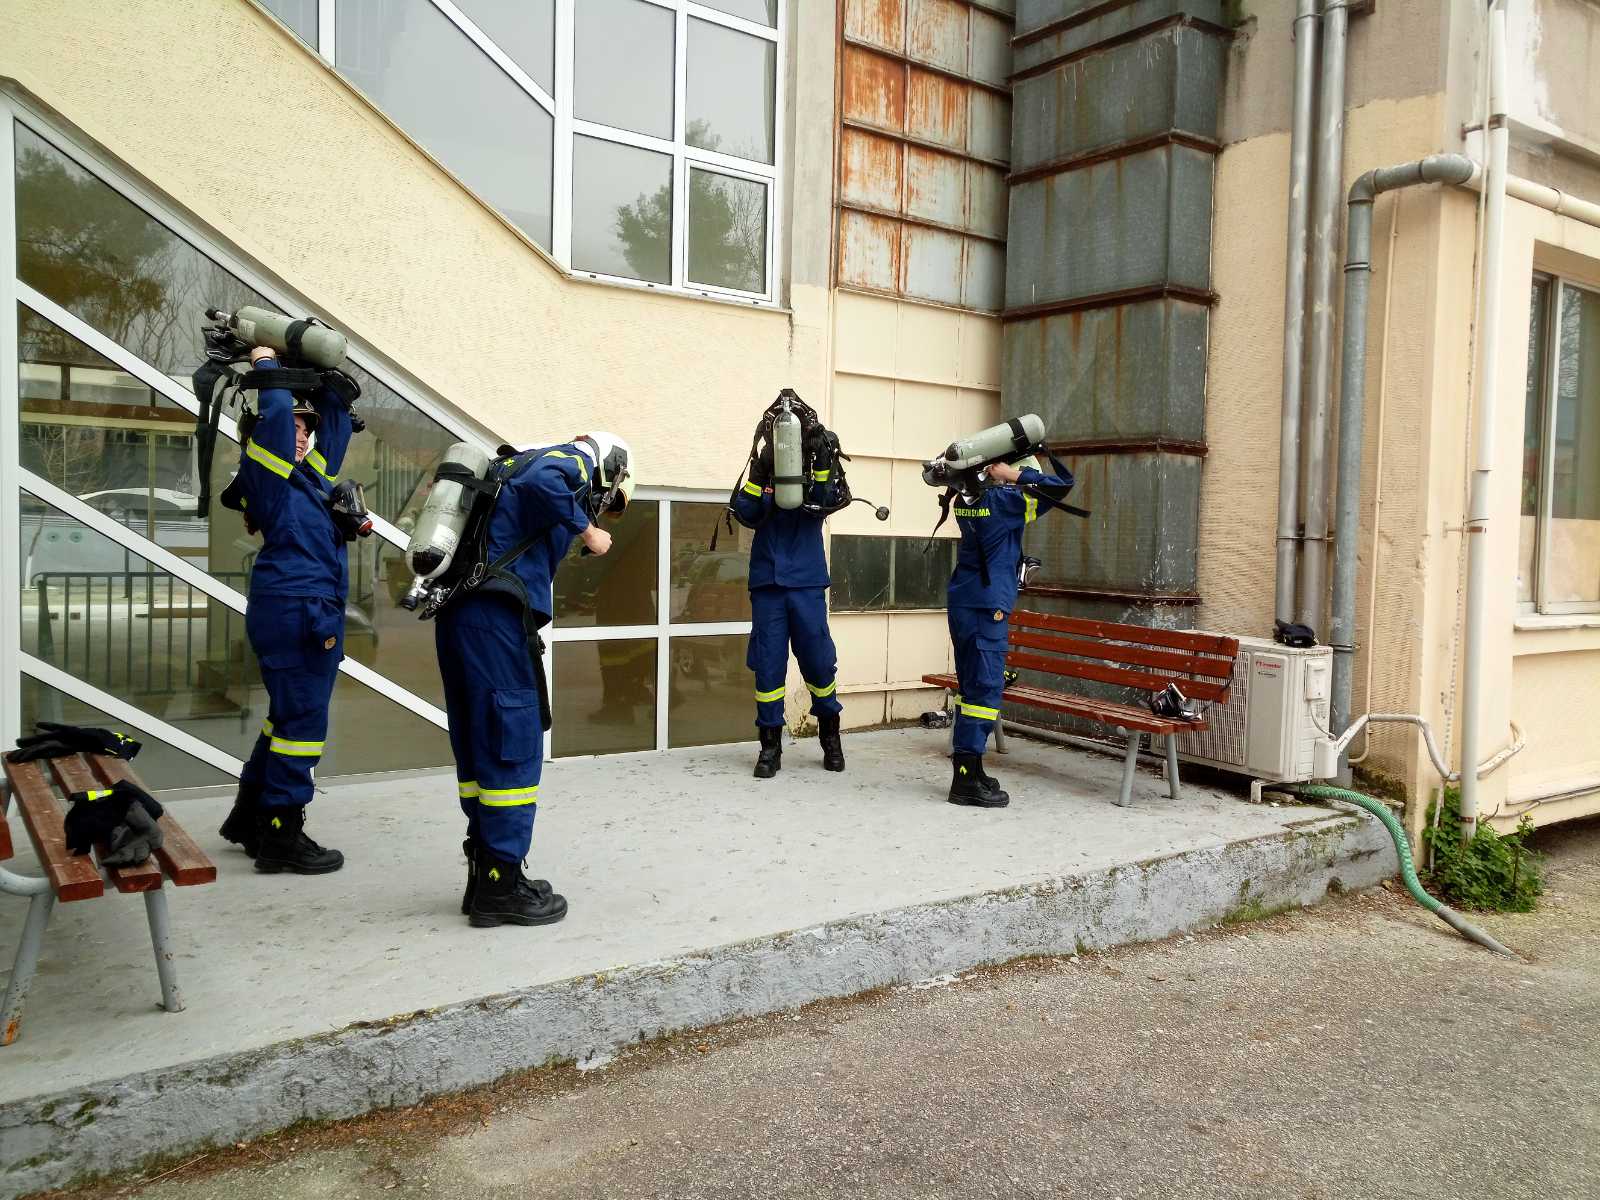 Πυροσβεστική Ακαδημία: Θεωρητική και πρακτική εκπαίδευση στην προσβολή πυρκαγιών (Φώτο)